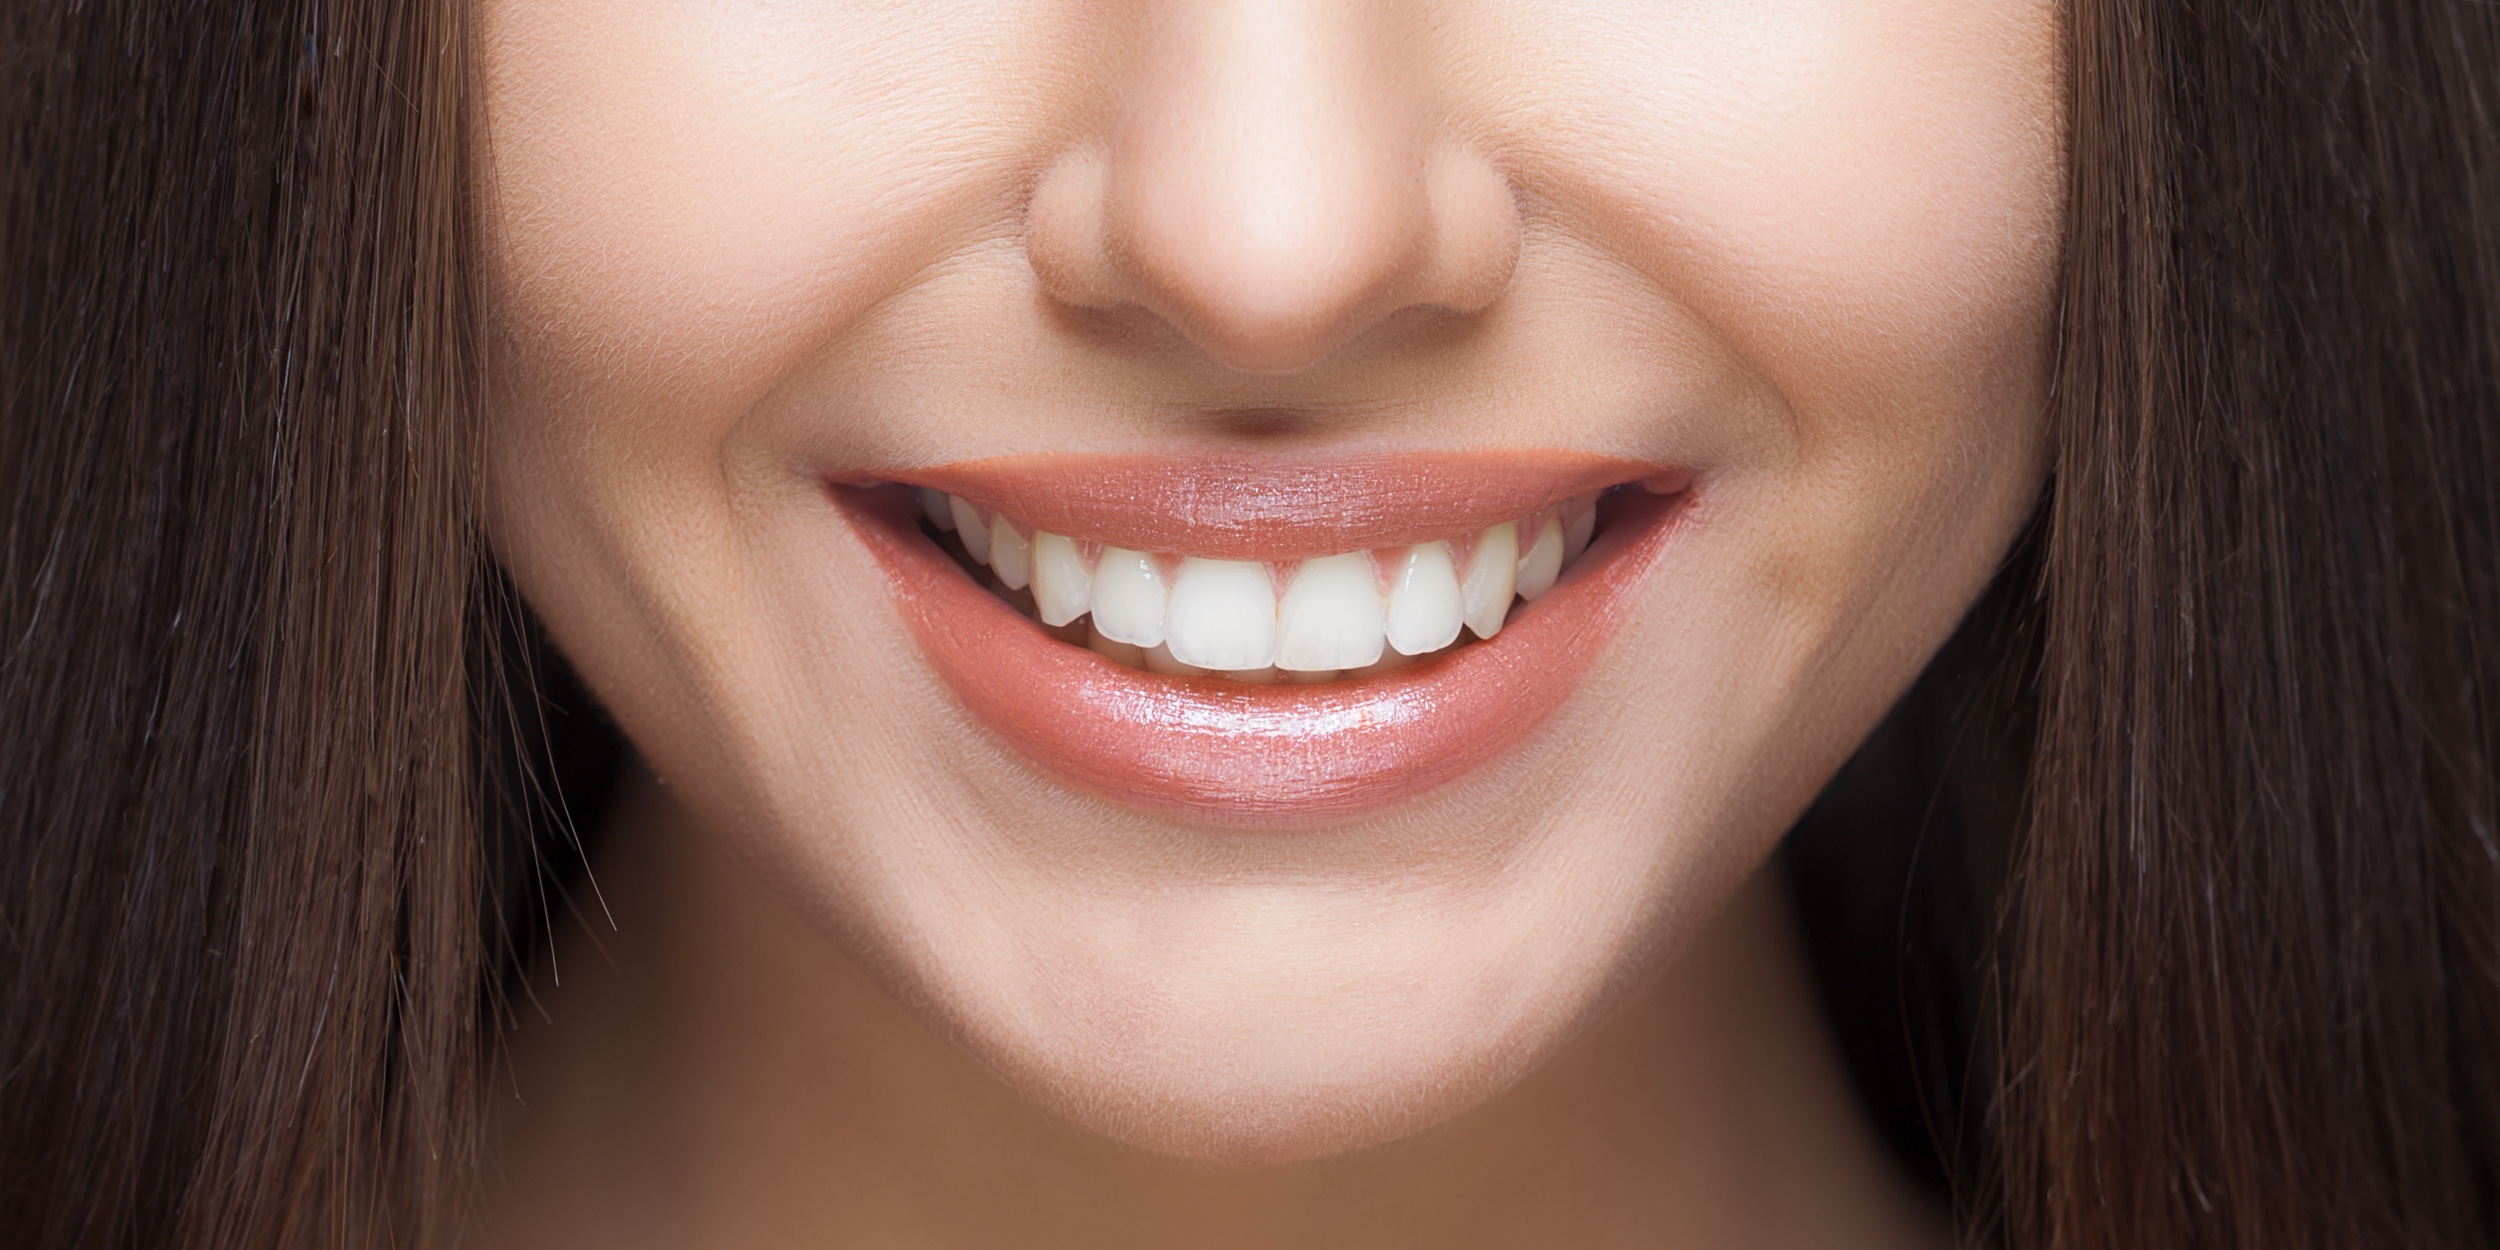 Правда ли, что белые зубы - залог здоровья или лучше походить с желтыми?